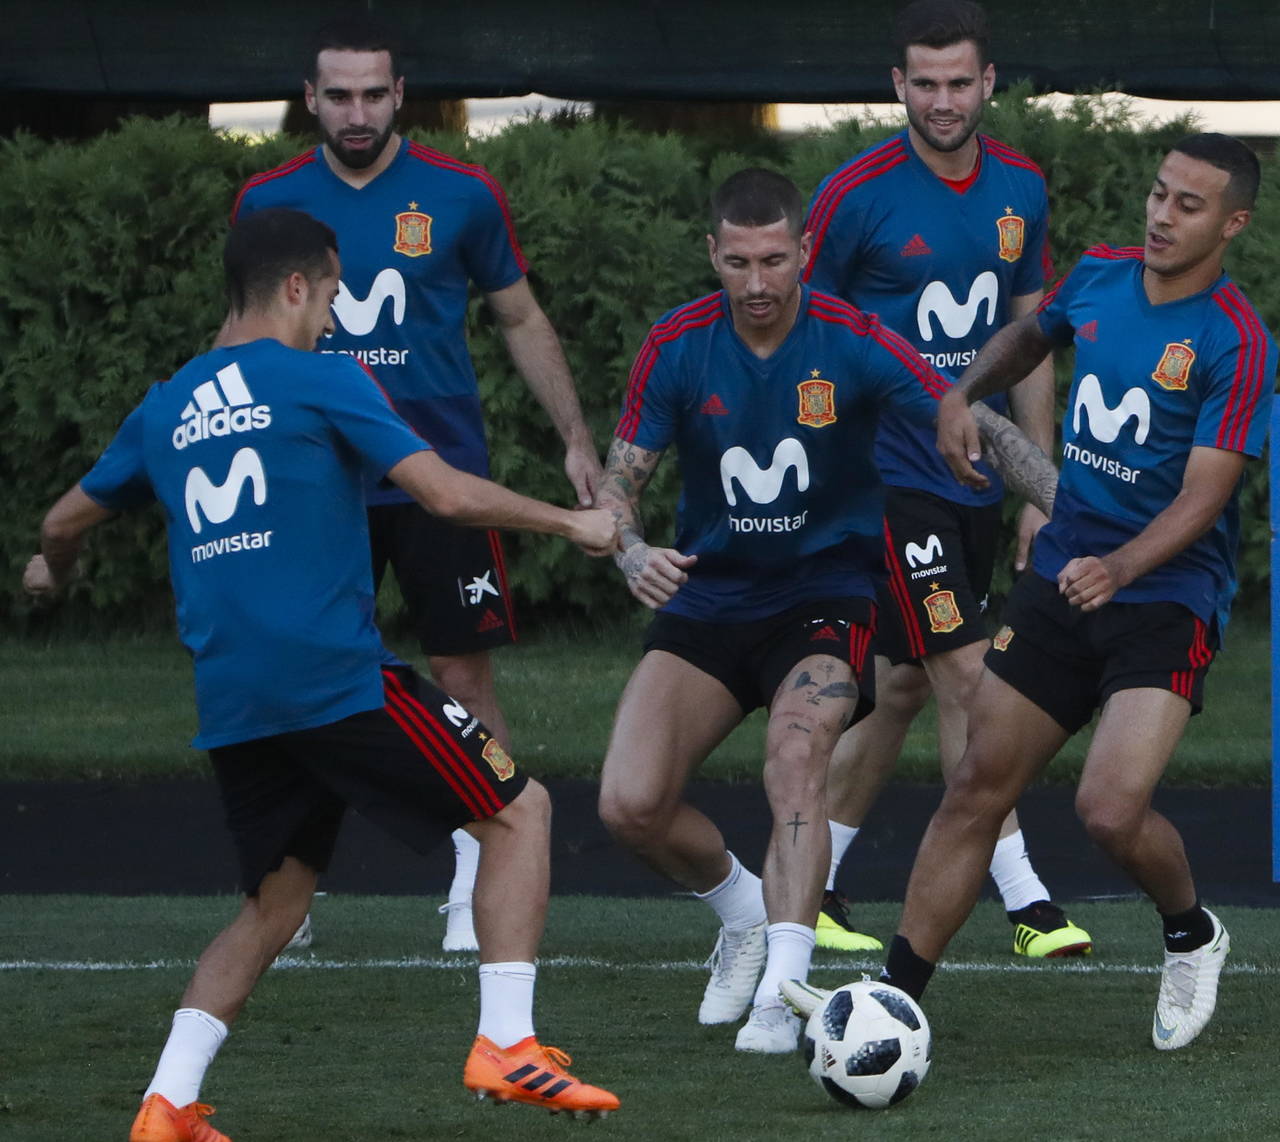 Tras una incierta fase de grupos, España espera volver a su nivel mañana ante el anfitrión Rusia. Selección española busca su equilibrio